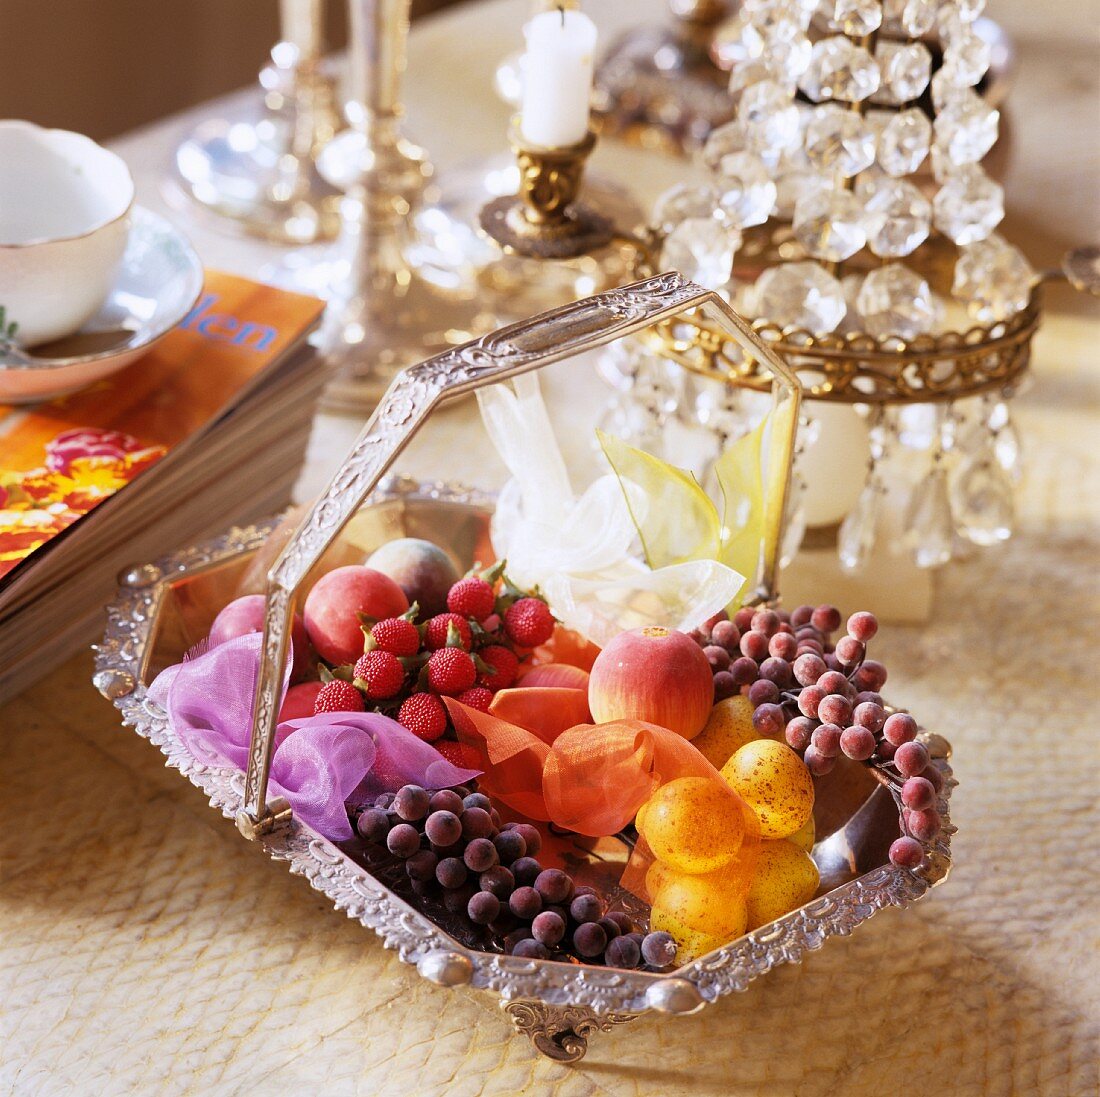 Silber-Korb mit künstlichen Früchten vor Tischleuchte mit Kristallschmuck